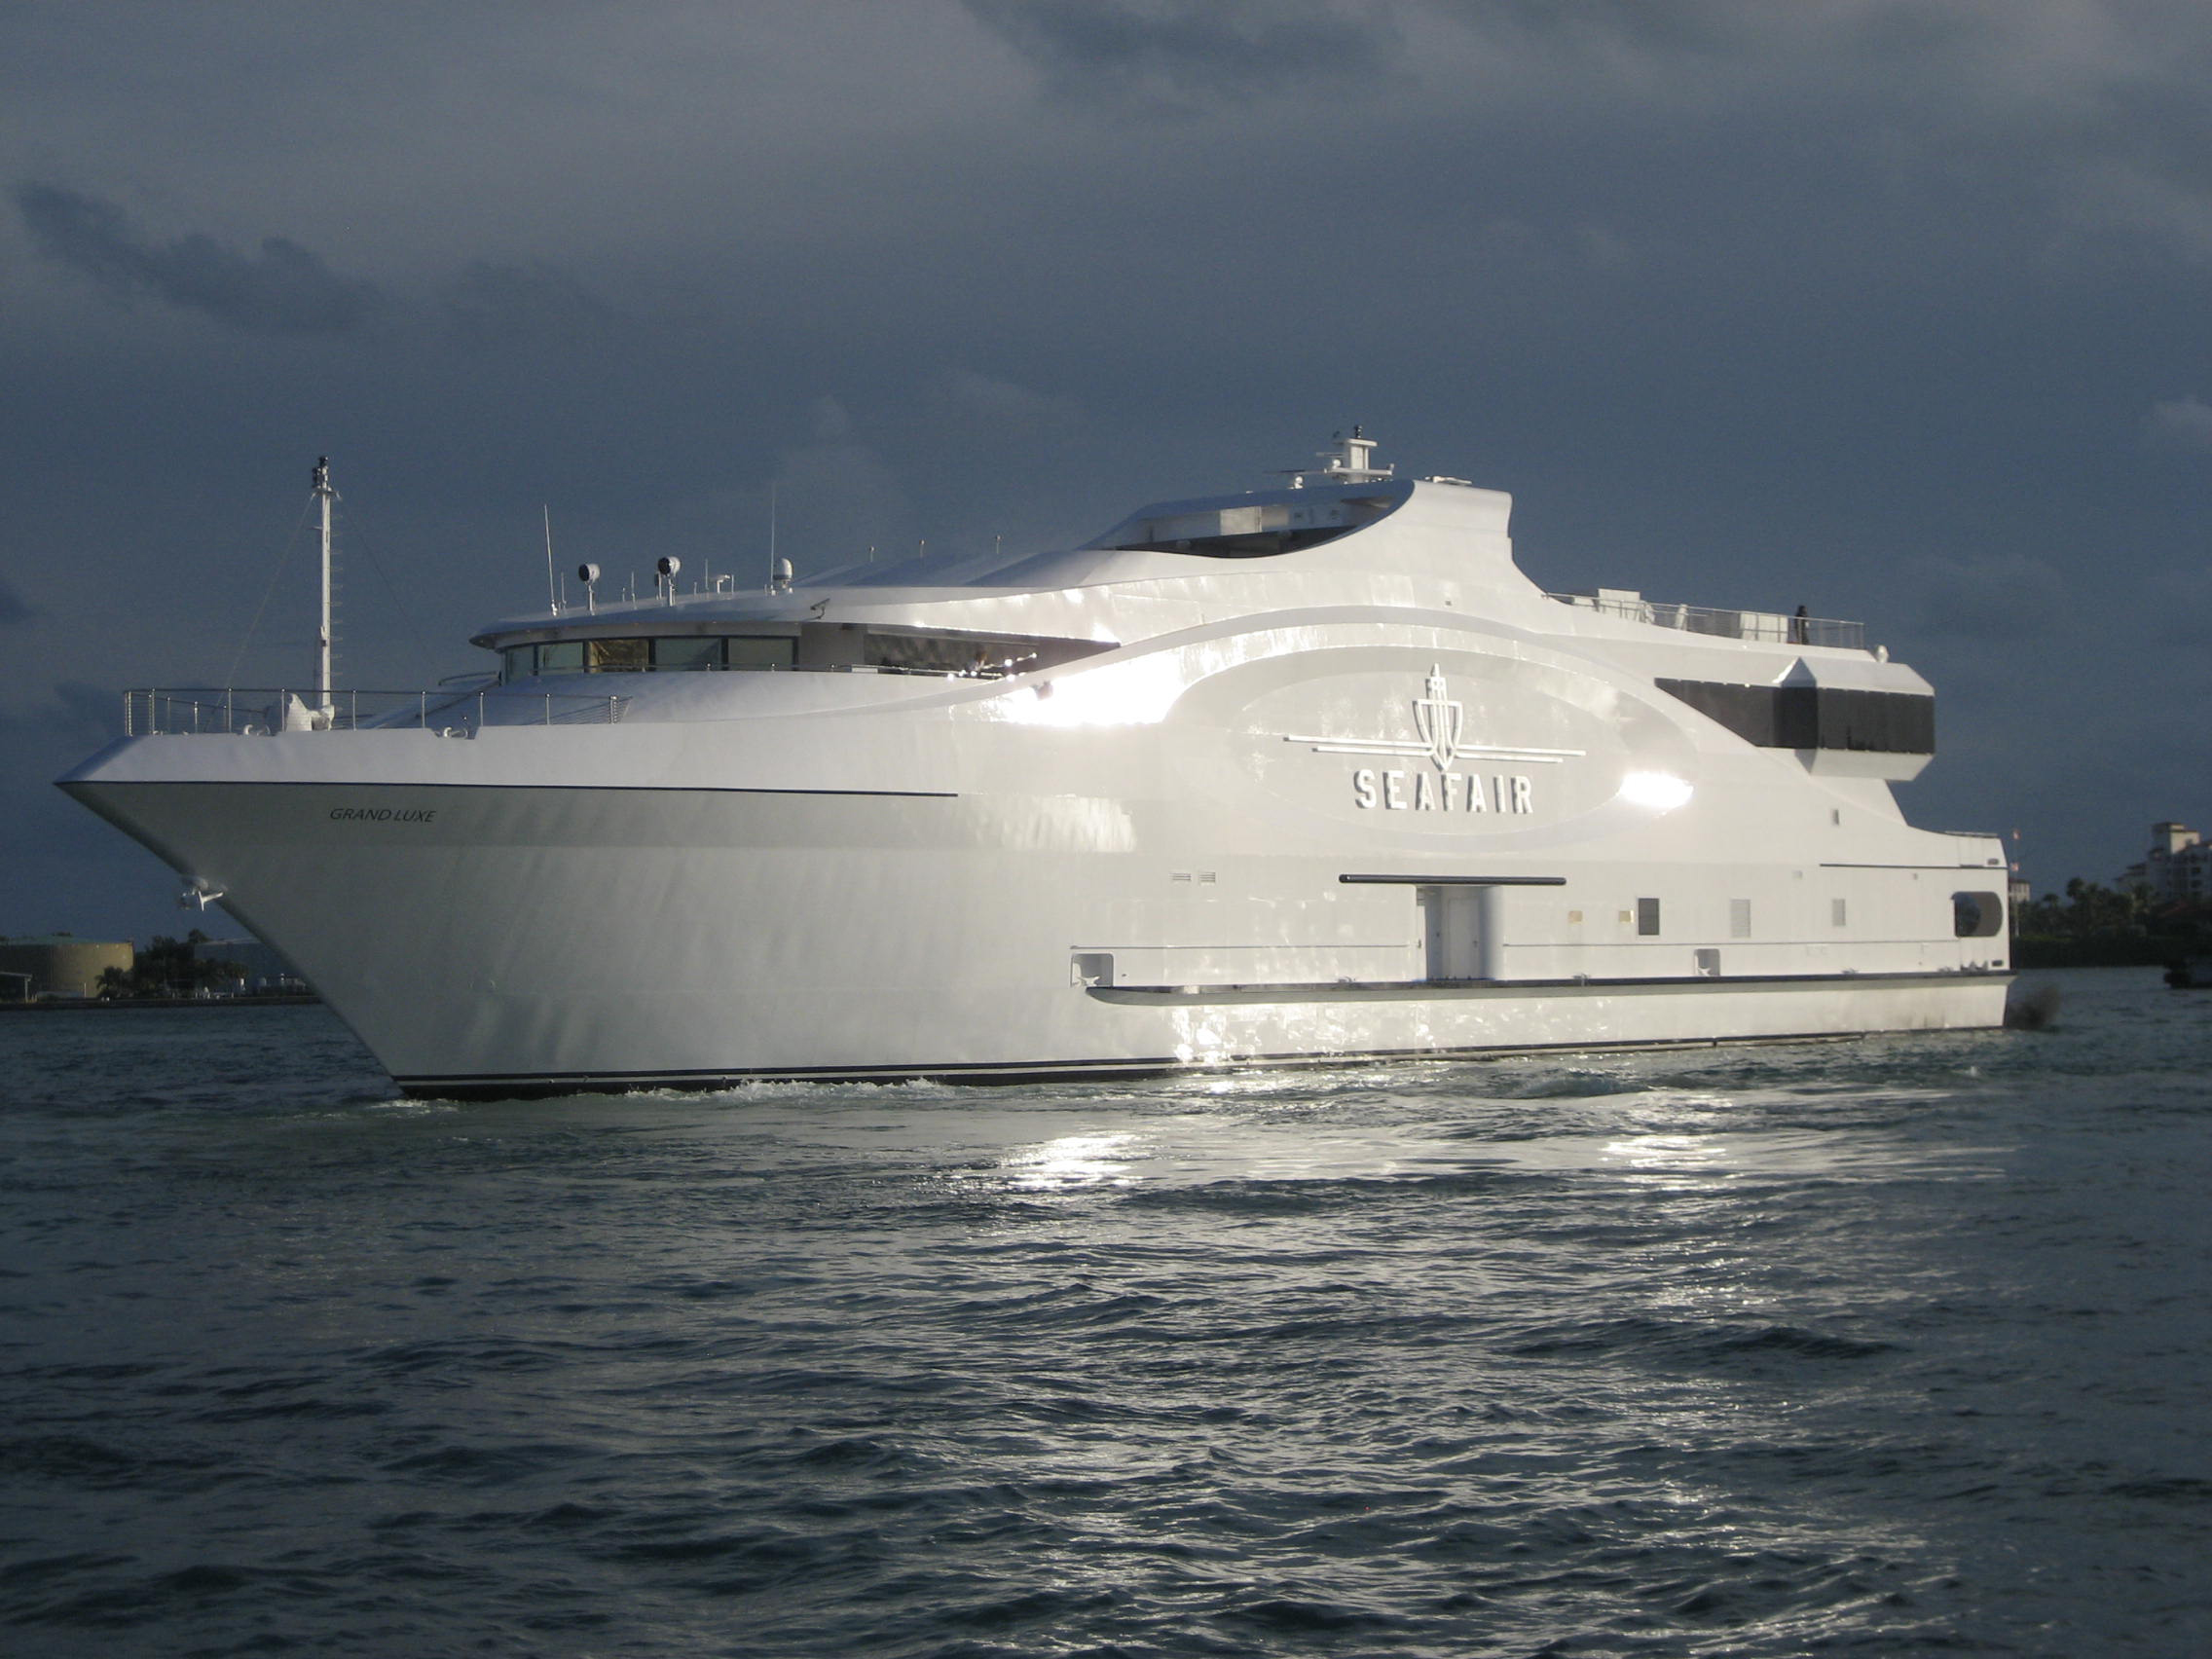 seafair yacht photos